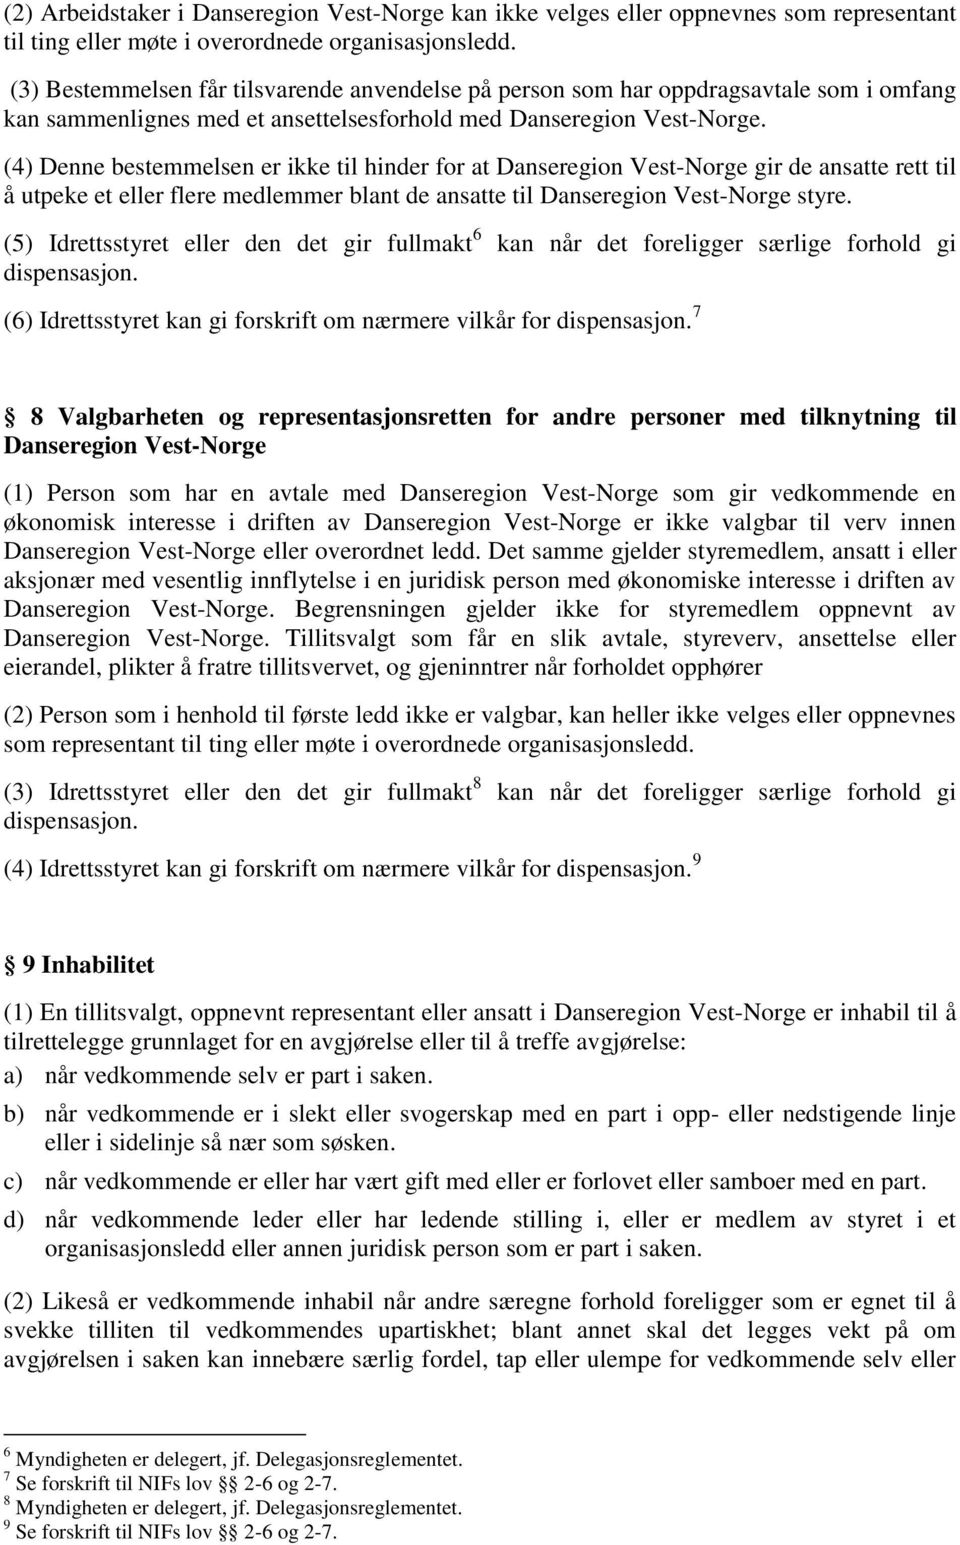 (4) Denne bestemmelsen er ikke til hinder for at Danseregion Vest-Norge gir de ansatte rett til å utpeke et eller flere medlemmer blant de ansatte til Danseregion Vest-Norge styre.